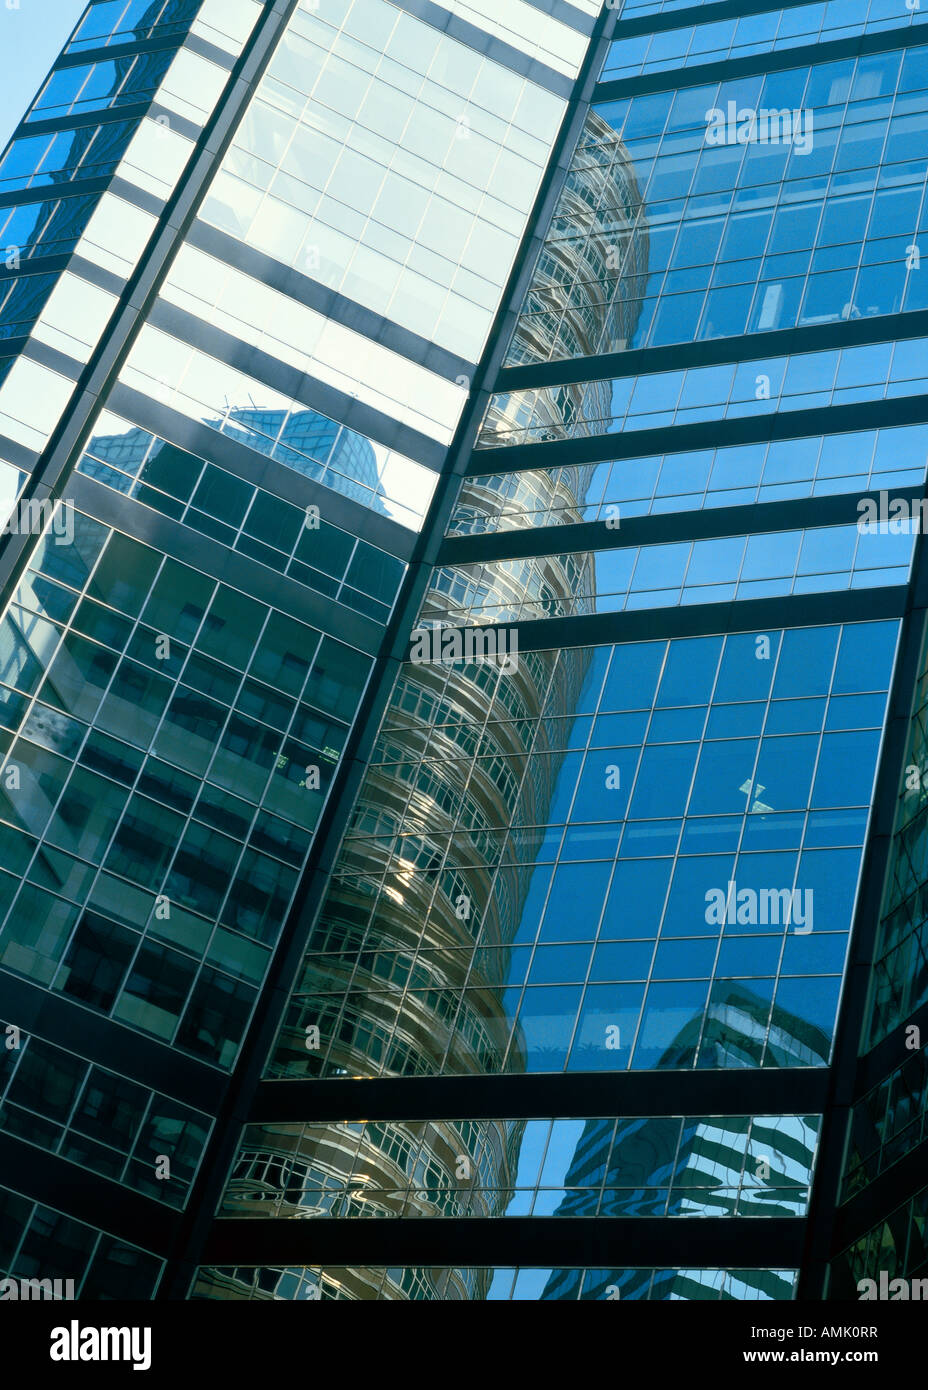 New York, glass facade Stock Photo